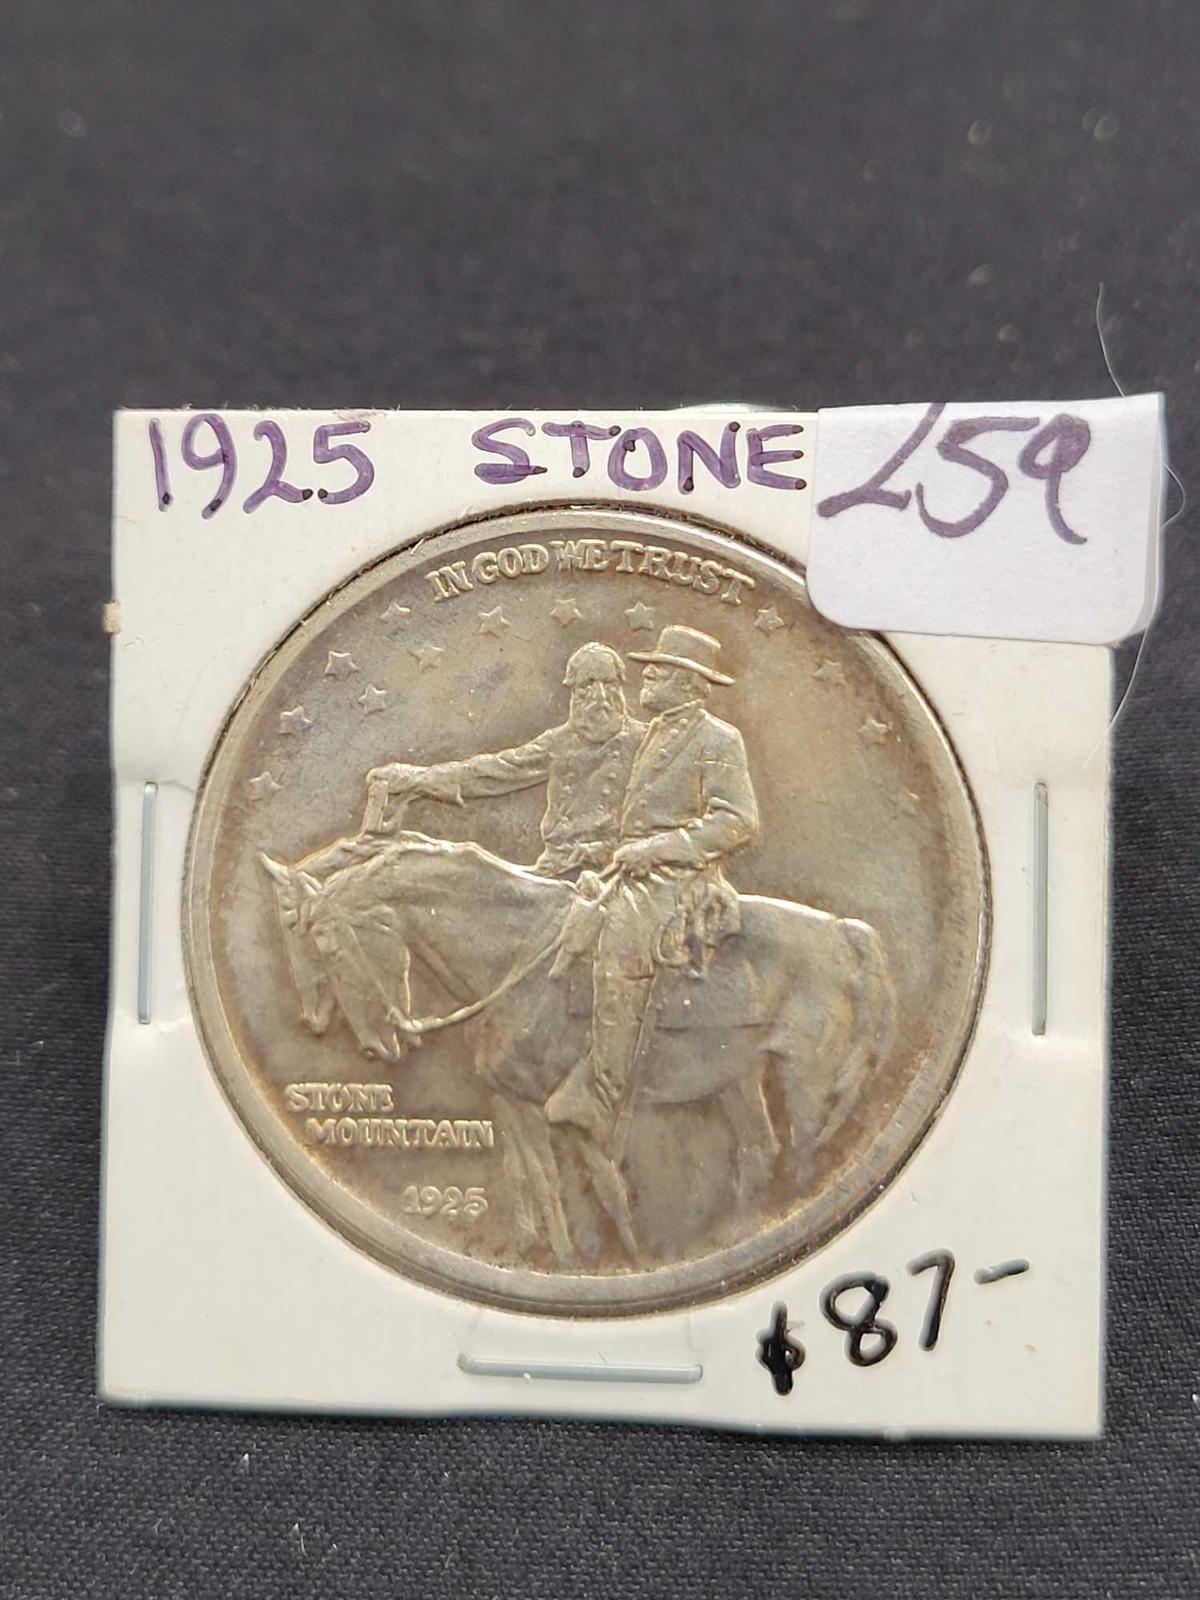 1925 Stone Half Dollar